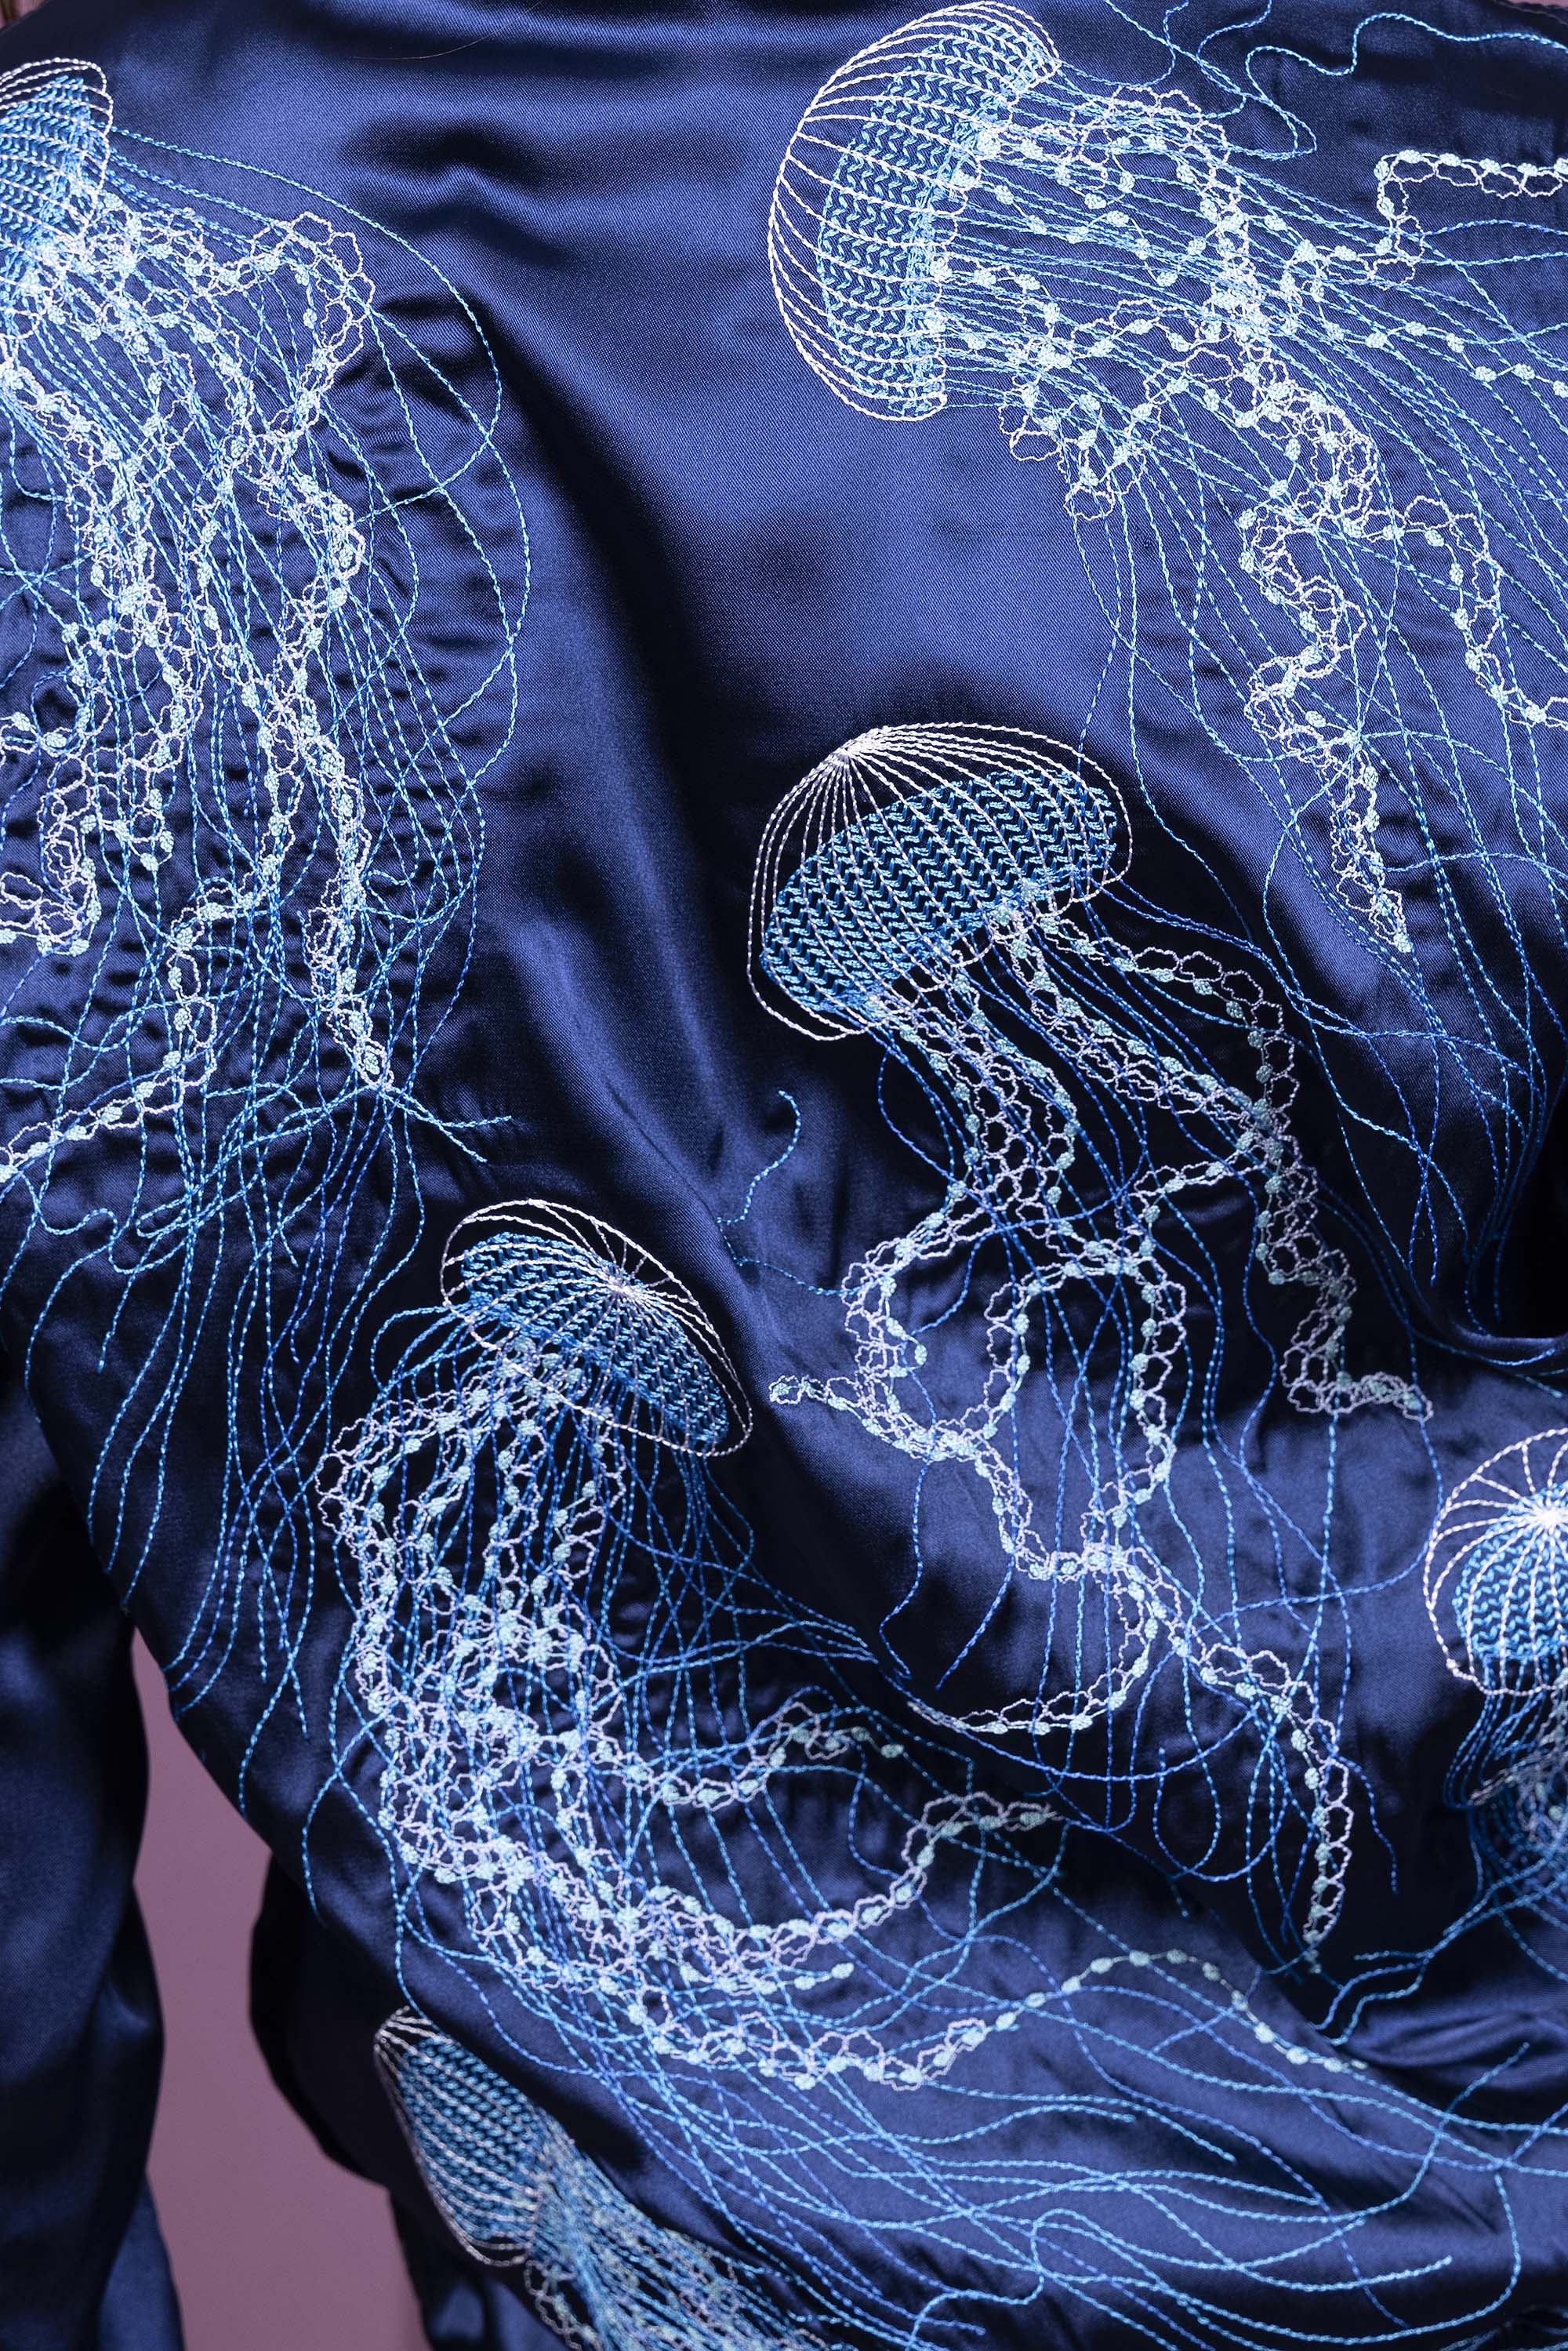 Blouson Paraguas Medusas Bleu Marine esthétique intemporelle et confortable silhouette avec élégance ligne minimaliste